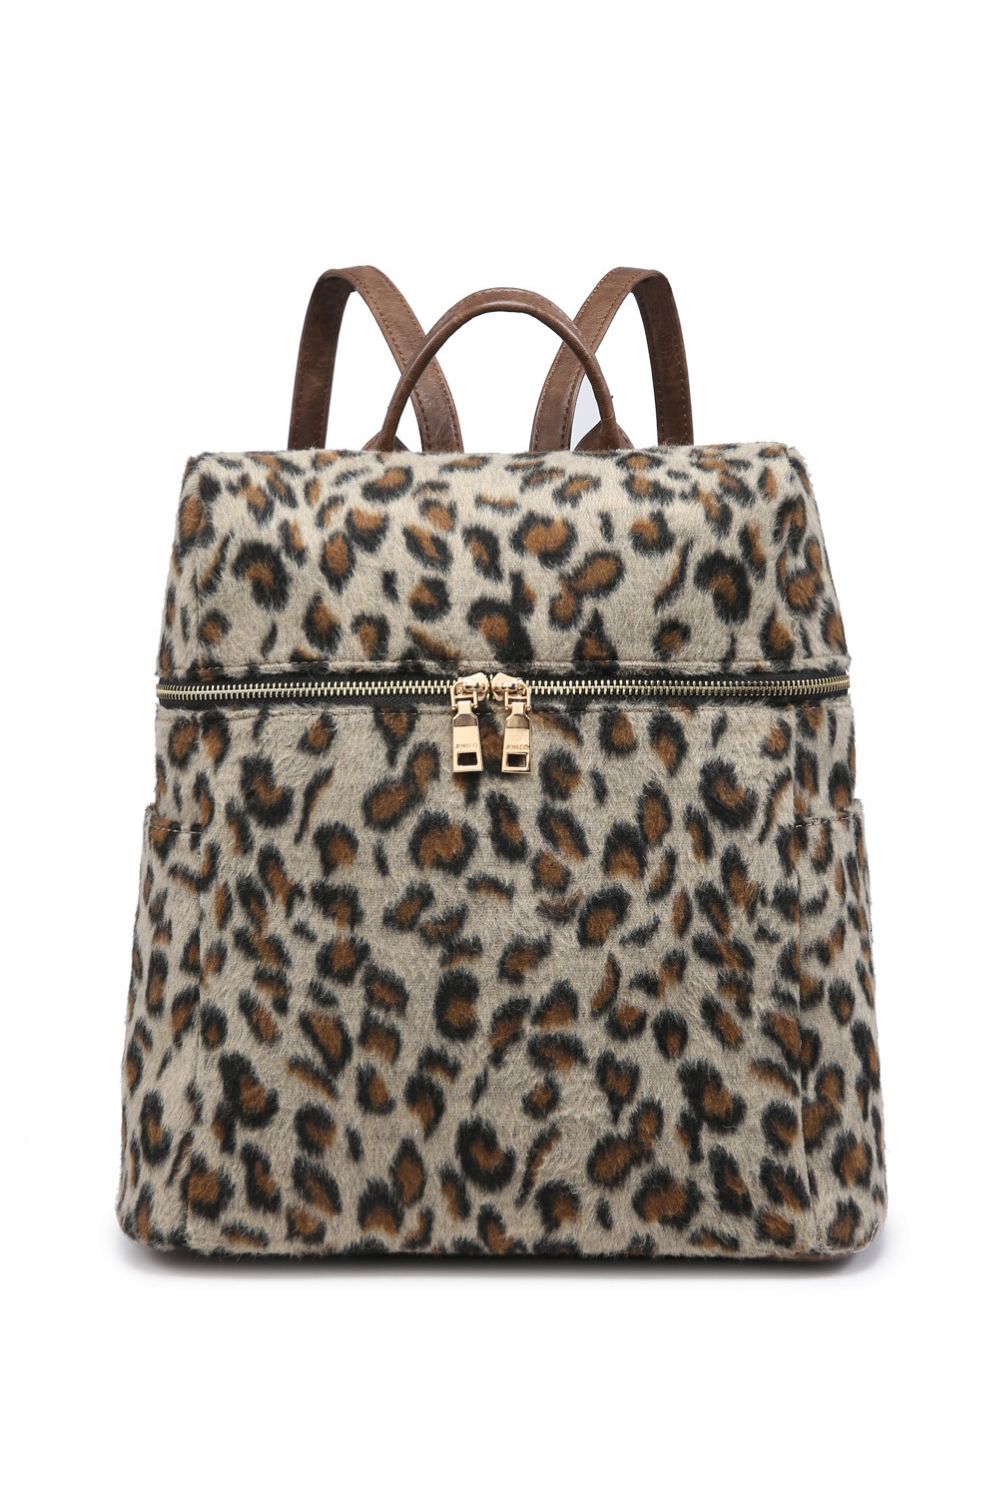 Andi Plaid Cheetah Brown Backpack